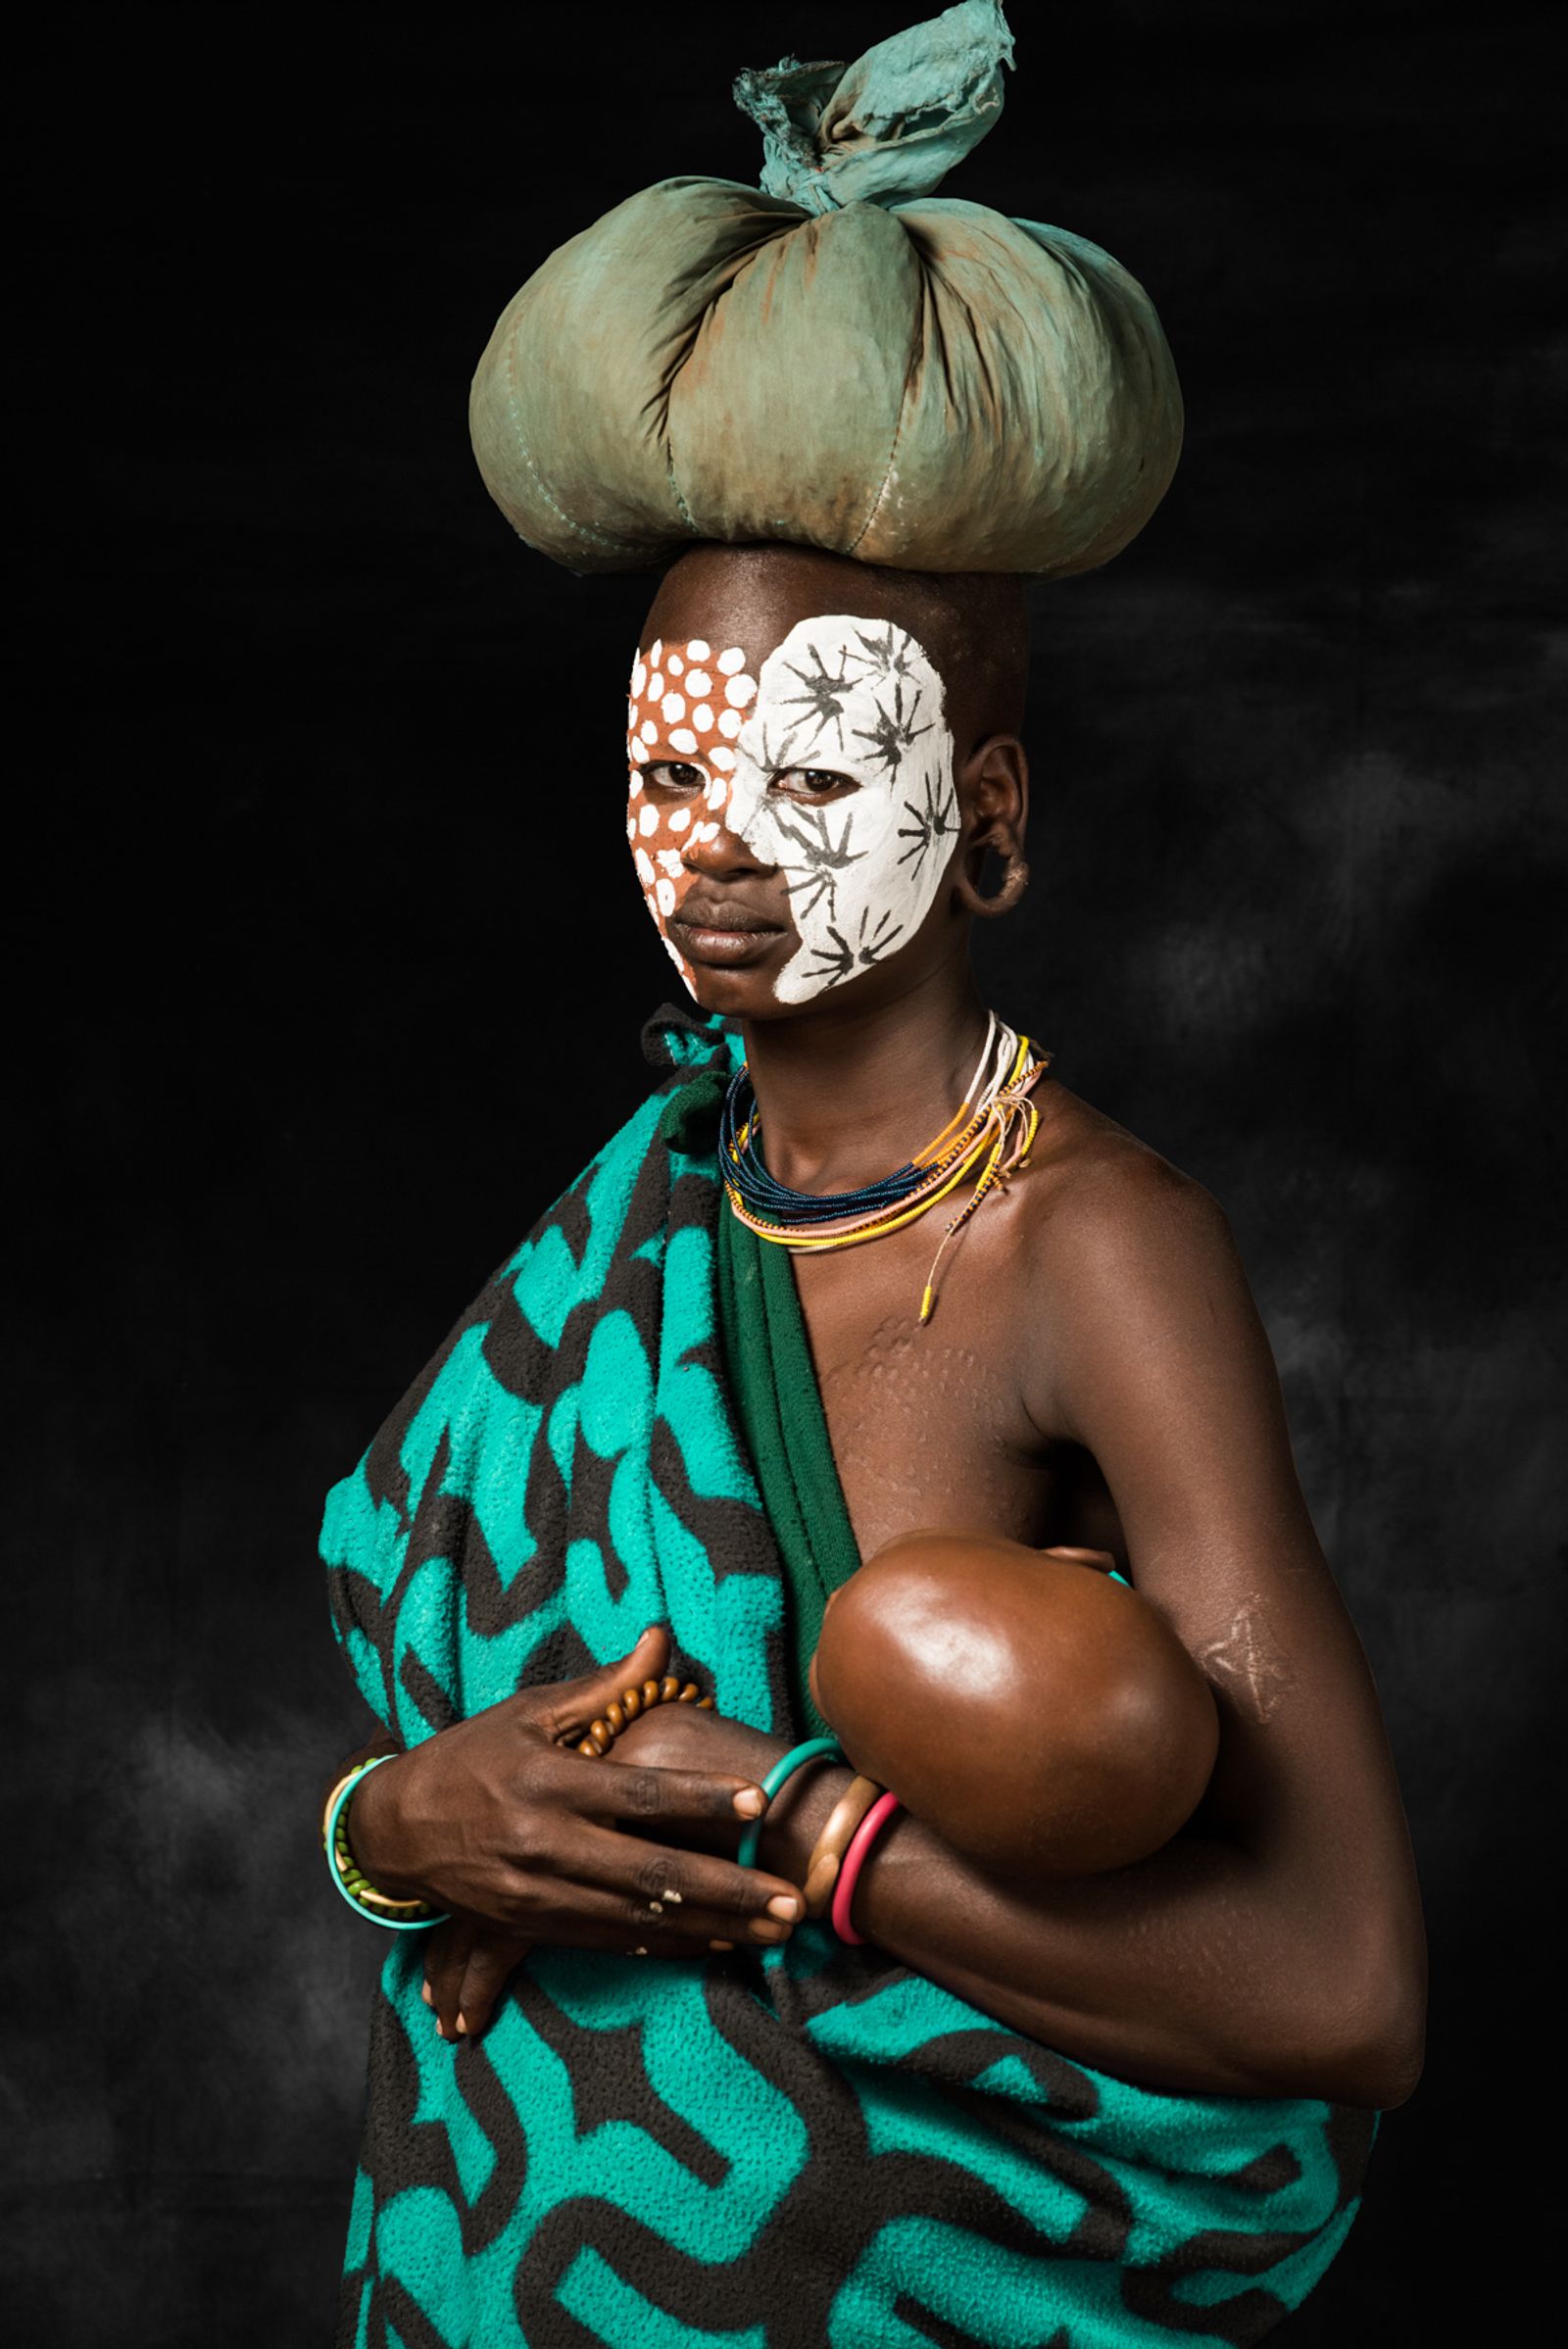 © Biljana Jurukovski - Mother Africa